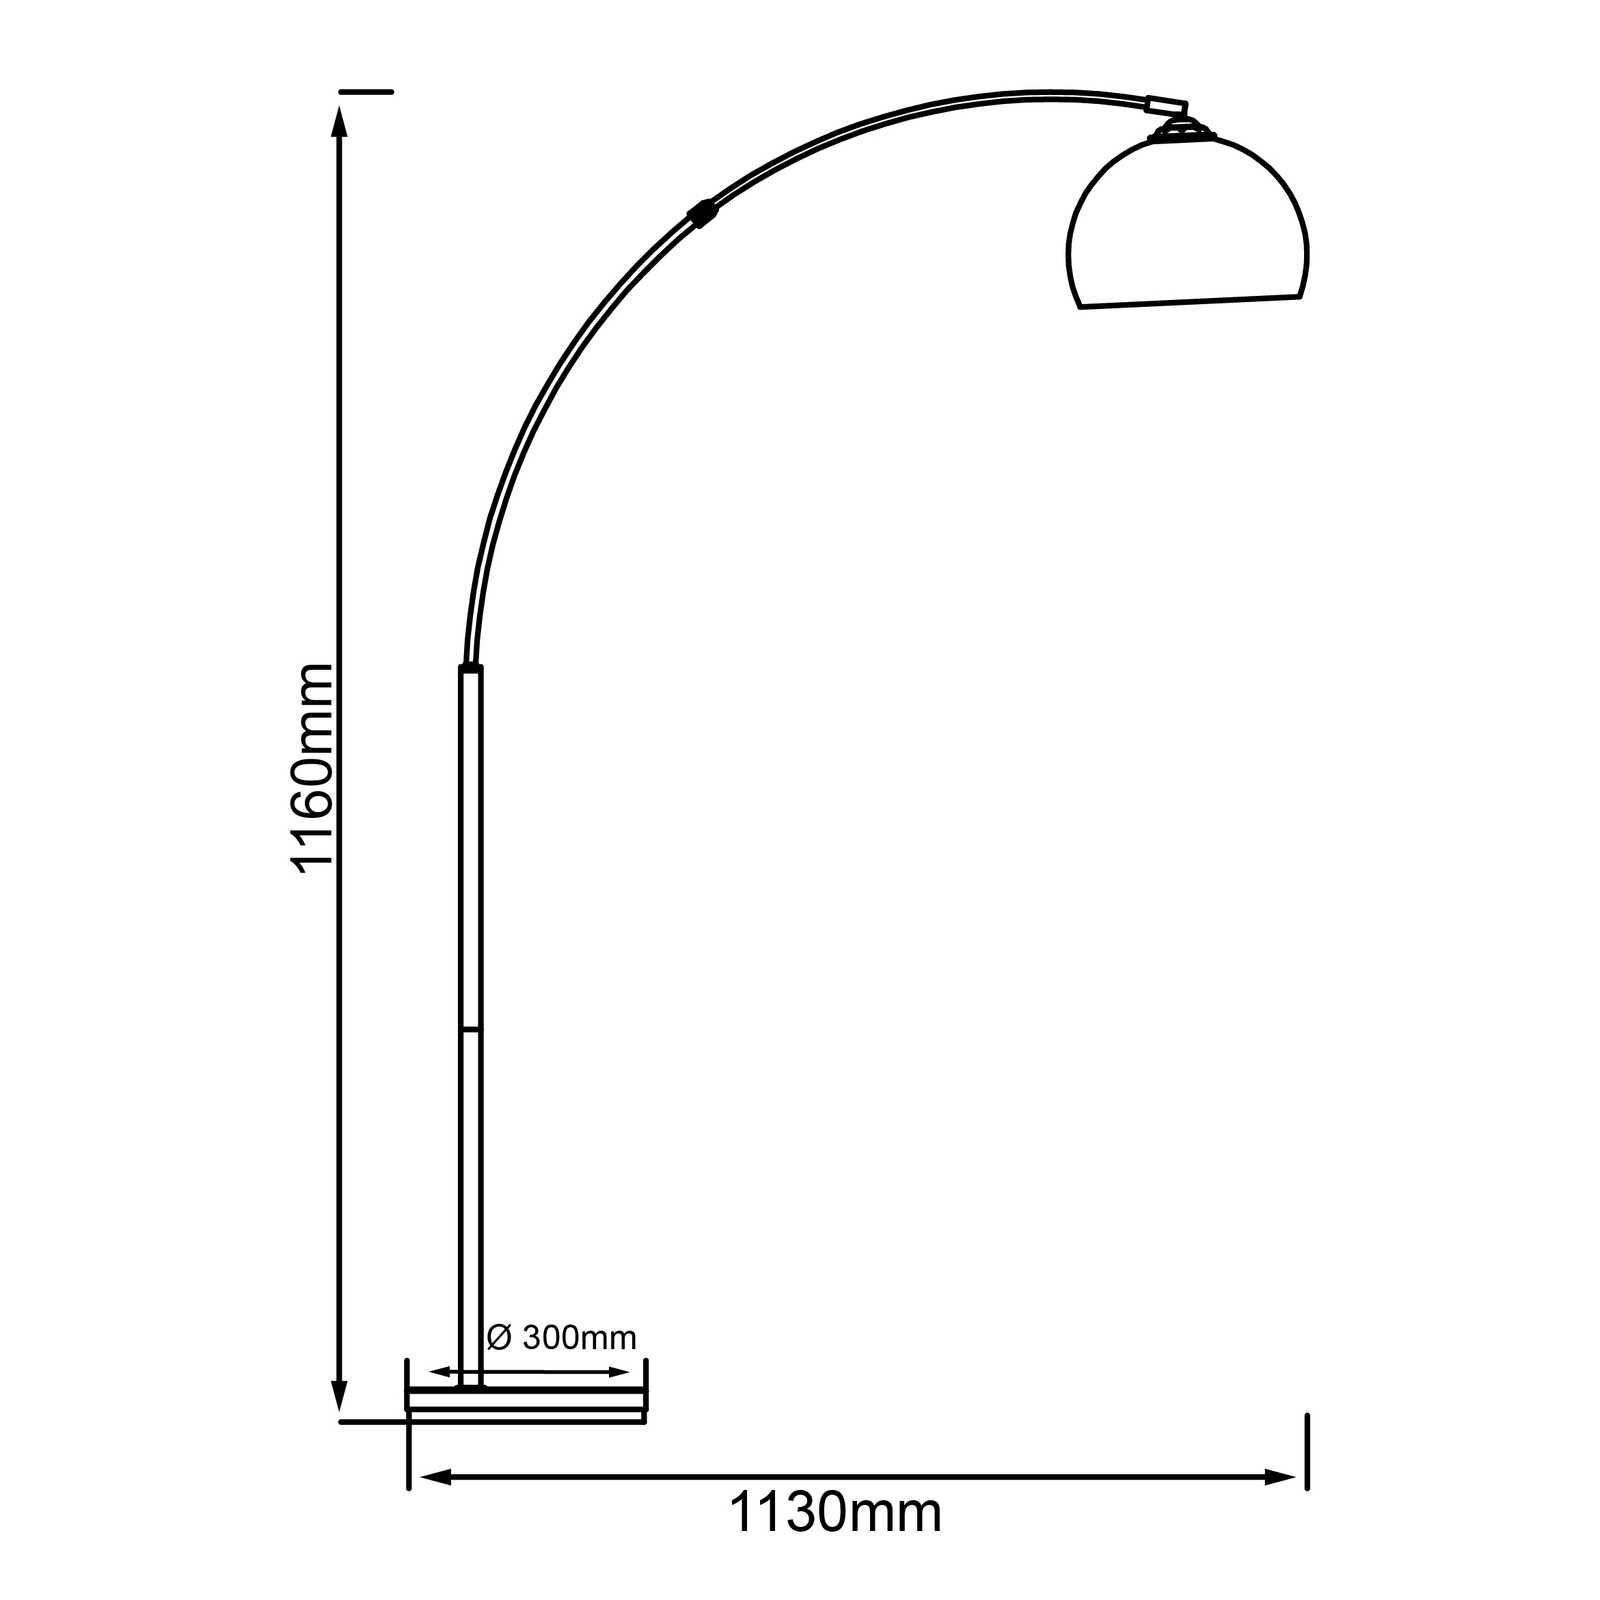             Lampes à poser en arc de cercle en plastique - Swantje - Metallic
        